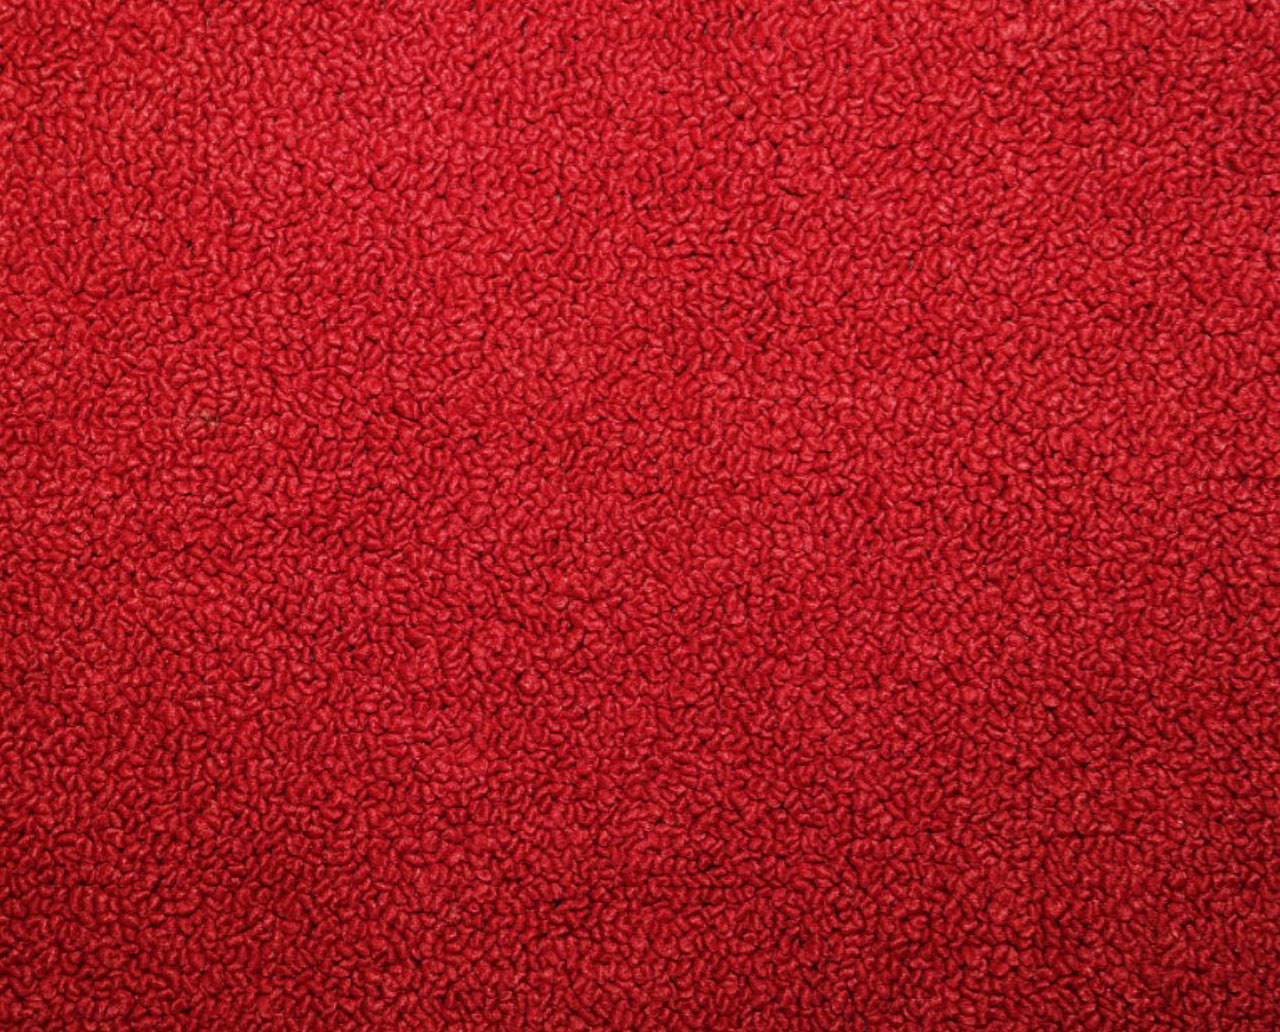 Holden Kingswood HQ Kingswood PV Sept72-Mar73 12E Calypso Red Carpet (Image 1 of 1)